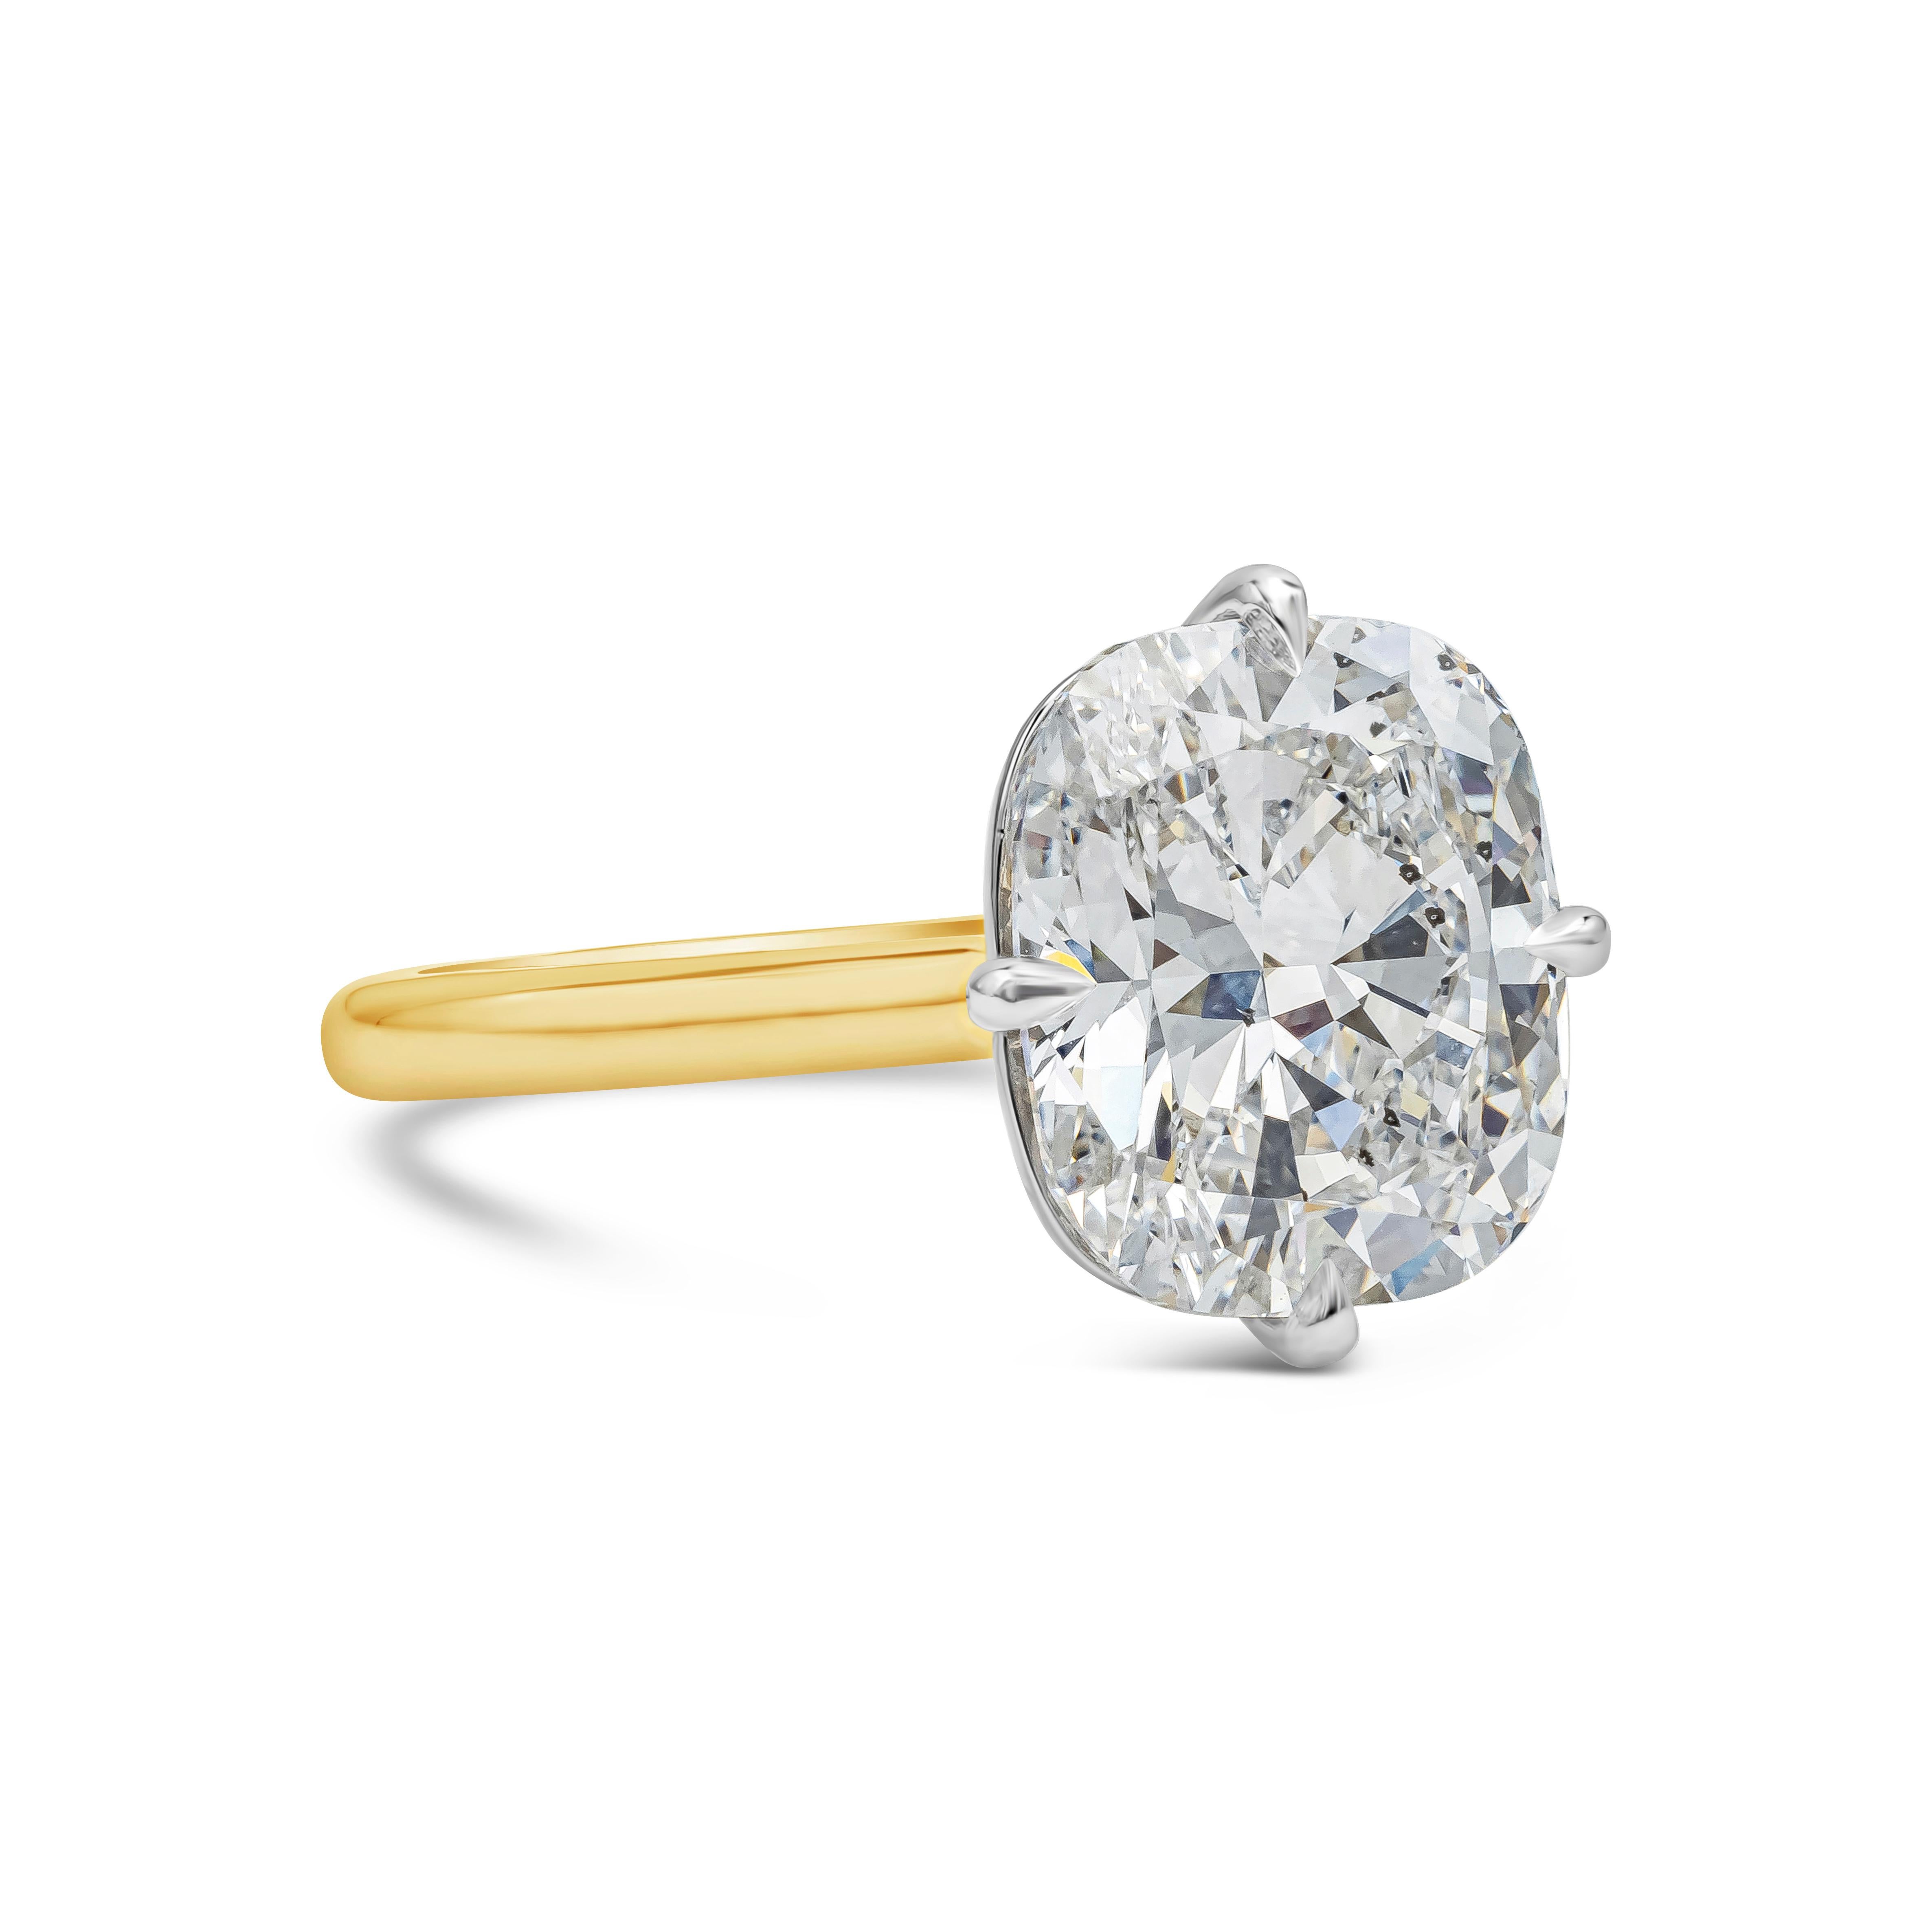 Ein wunderschöner Verlobungsring mit einem GIA-zertifizierten Diamanten im Kissenschliff von 5,02 Karat, Farbe D und Reinheit SI2. Eingefasst in einen einzigartigen Kompasskorb aus Platin. Der Korb ist in ein dünnes Band aus 18 Karat Gelbgold